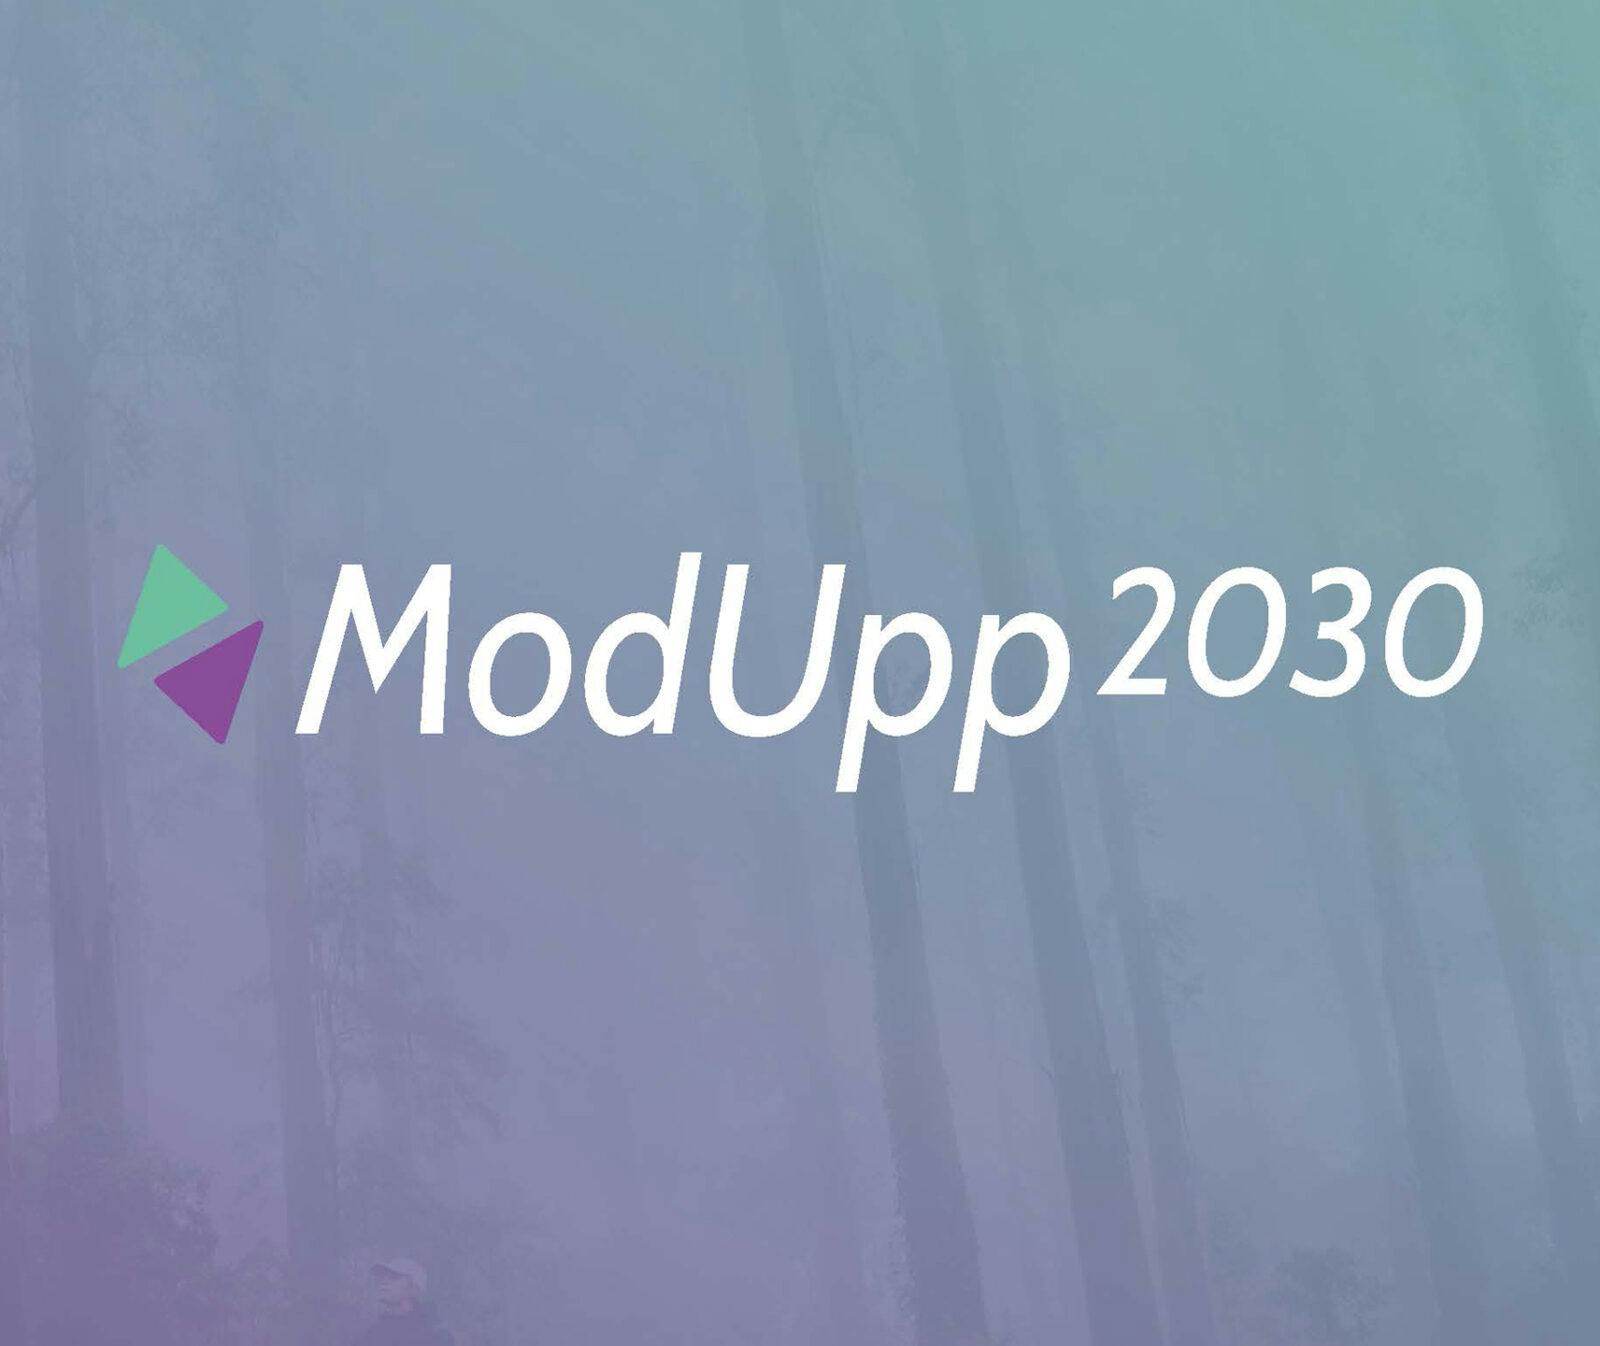 modupp-2030, hållbara, upphandling, modupp